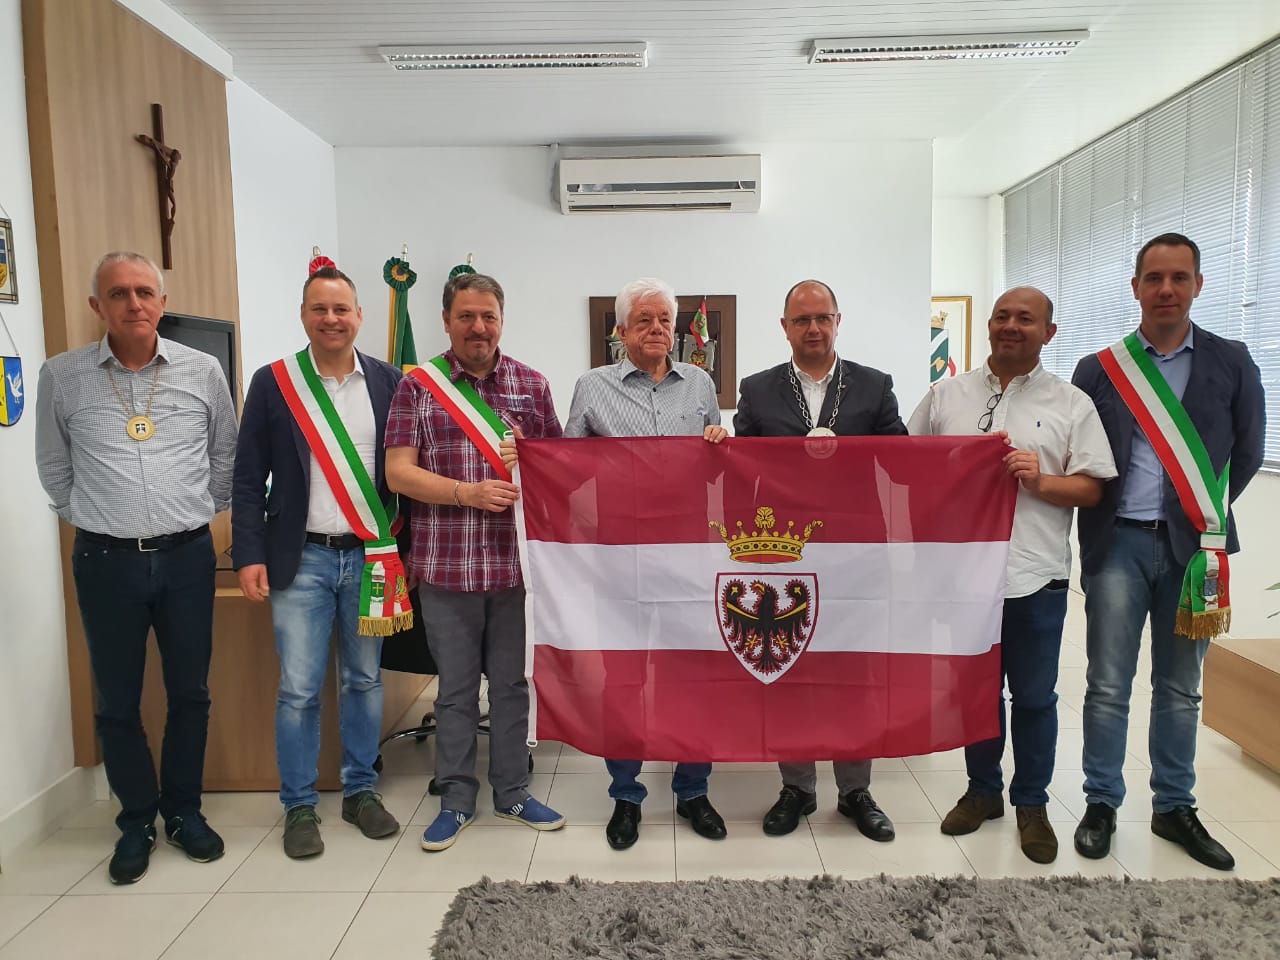 Comitiva de prefeitos da região de Trento, na Itália, visita a cidade de Brusque